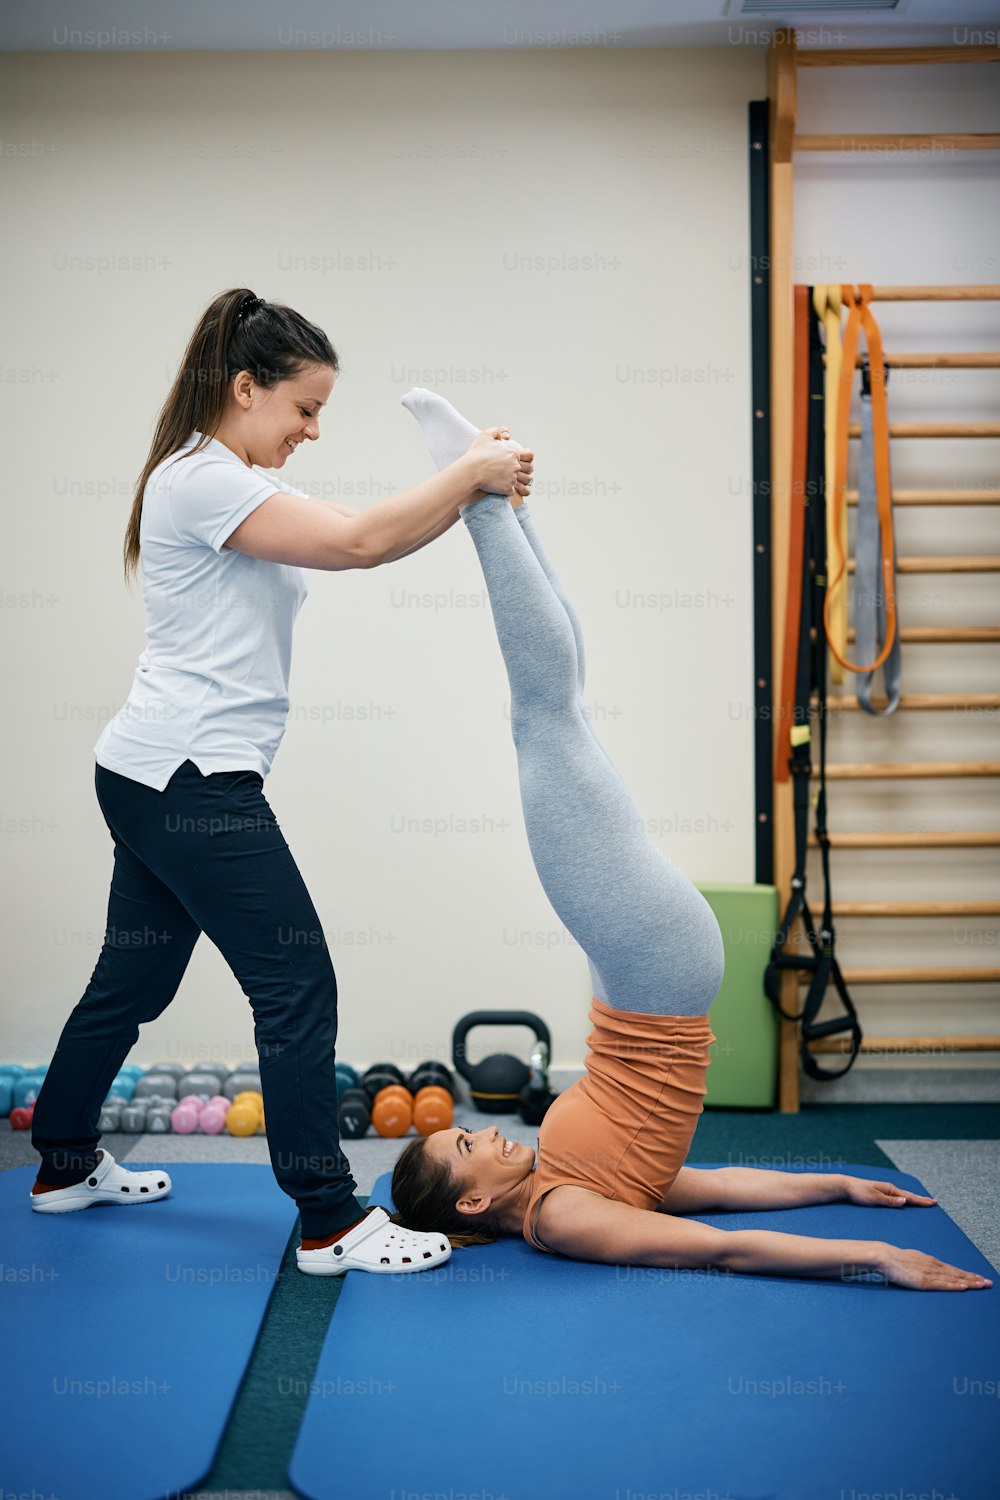 Fisioterapista felice che assiste la giovane donna con l'esercizio della spalla in piedi durante il trattamento di terapia fisica presso il centro benessere.